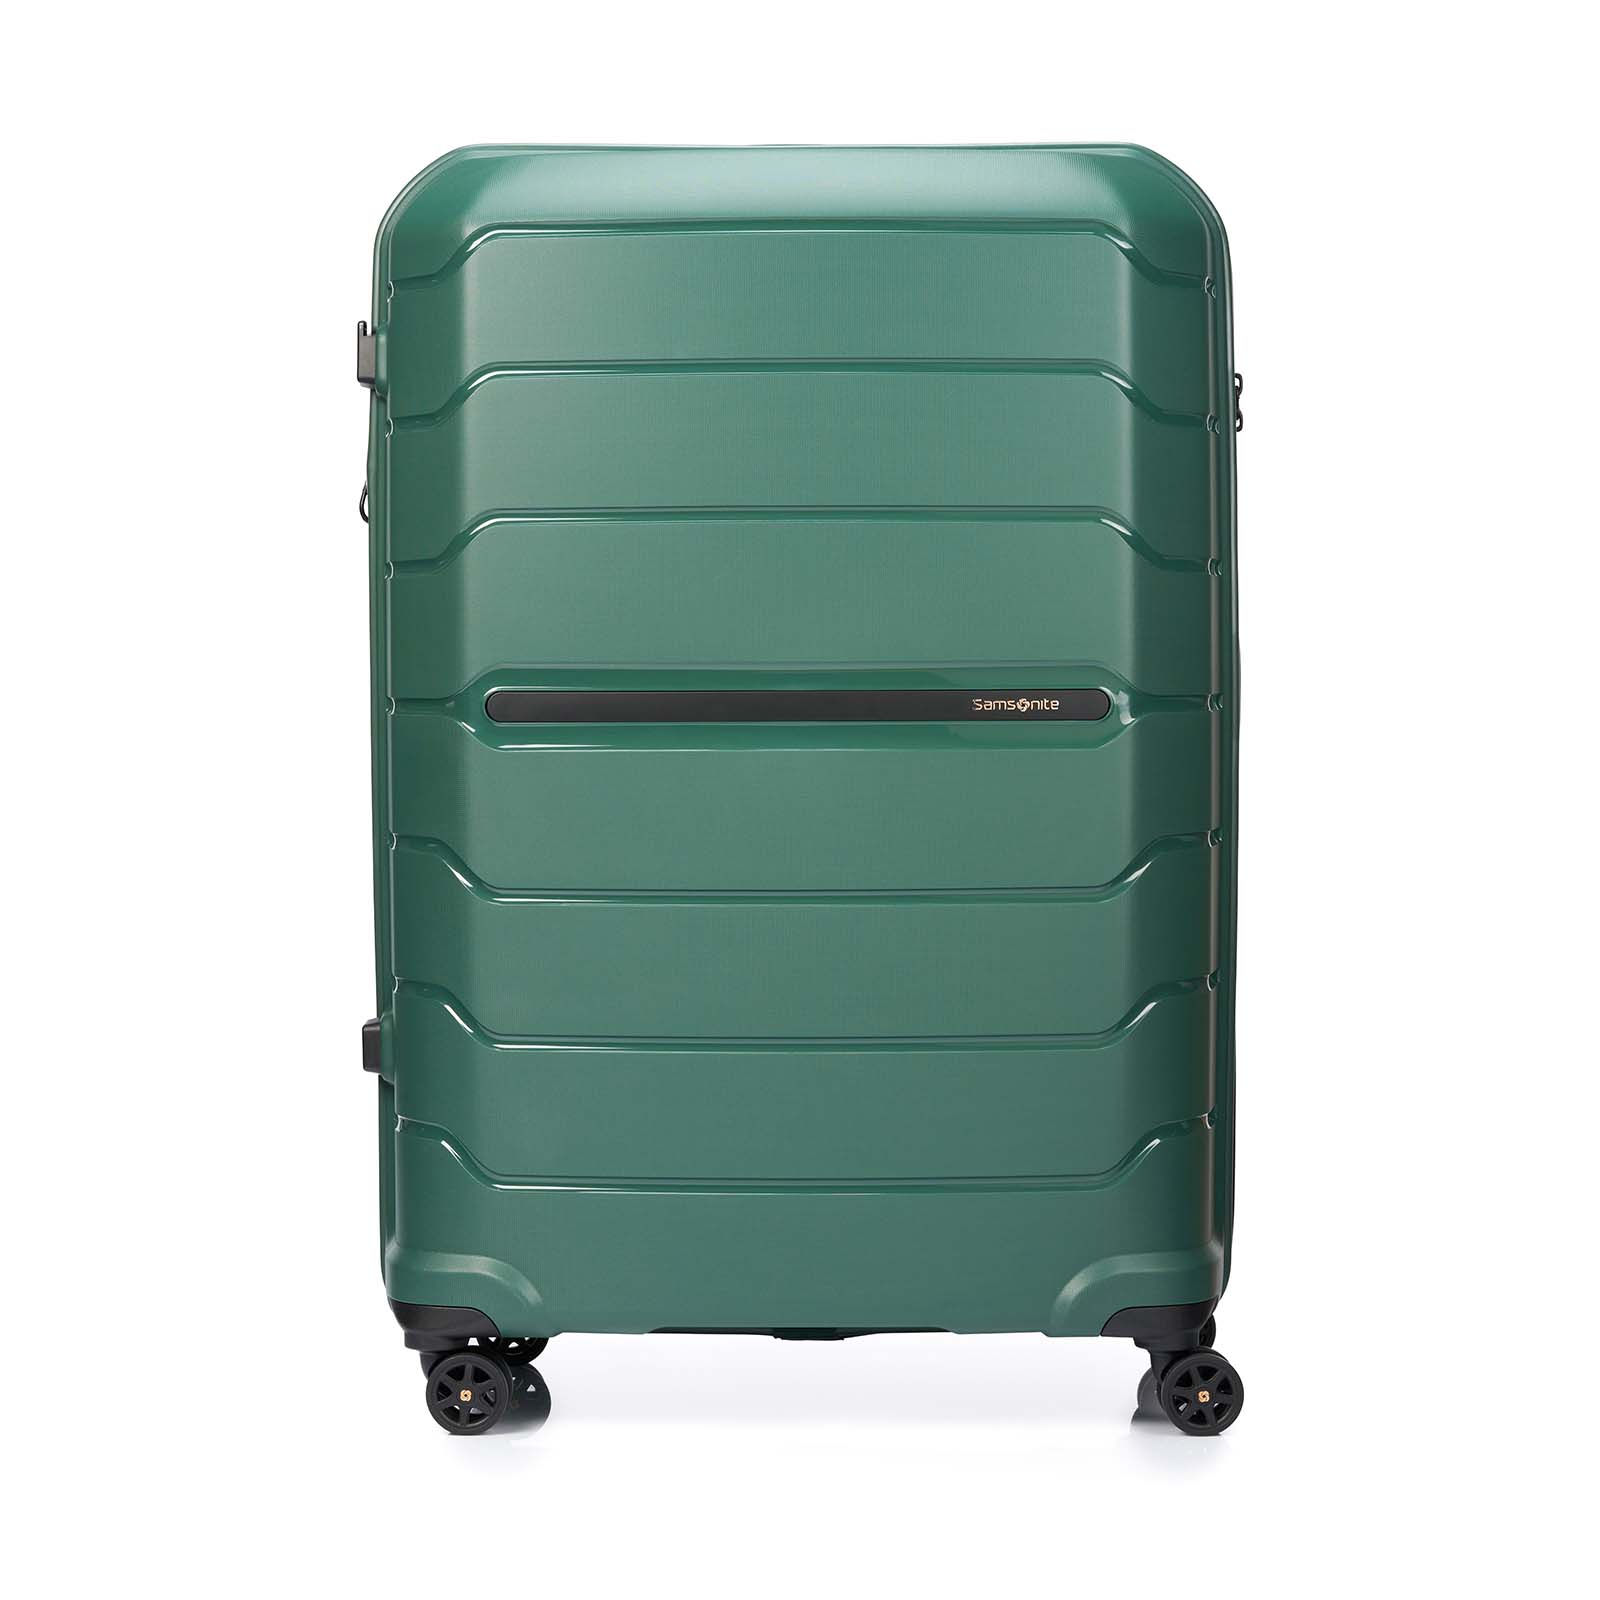 Samsonite-Oc2lite-81cm-Suitcase-Urban-Green-Front